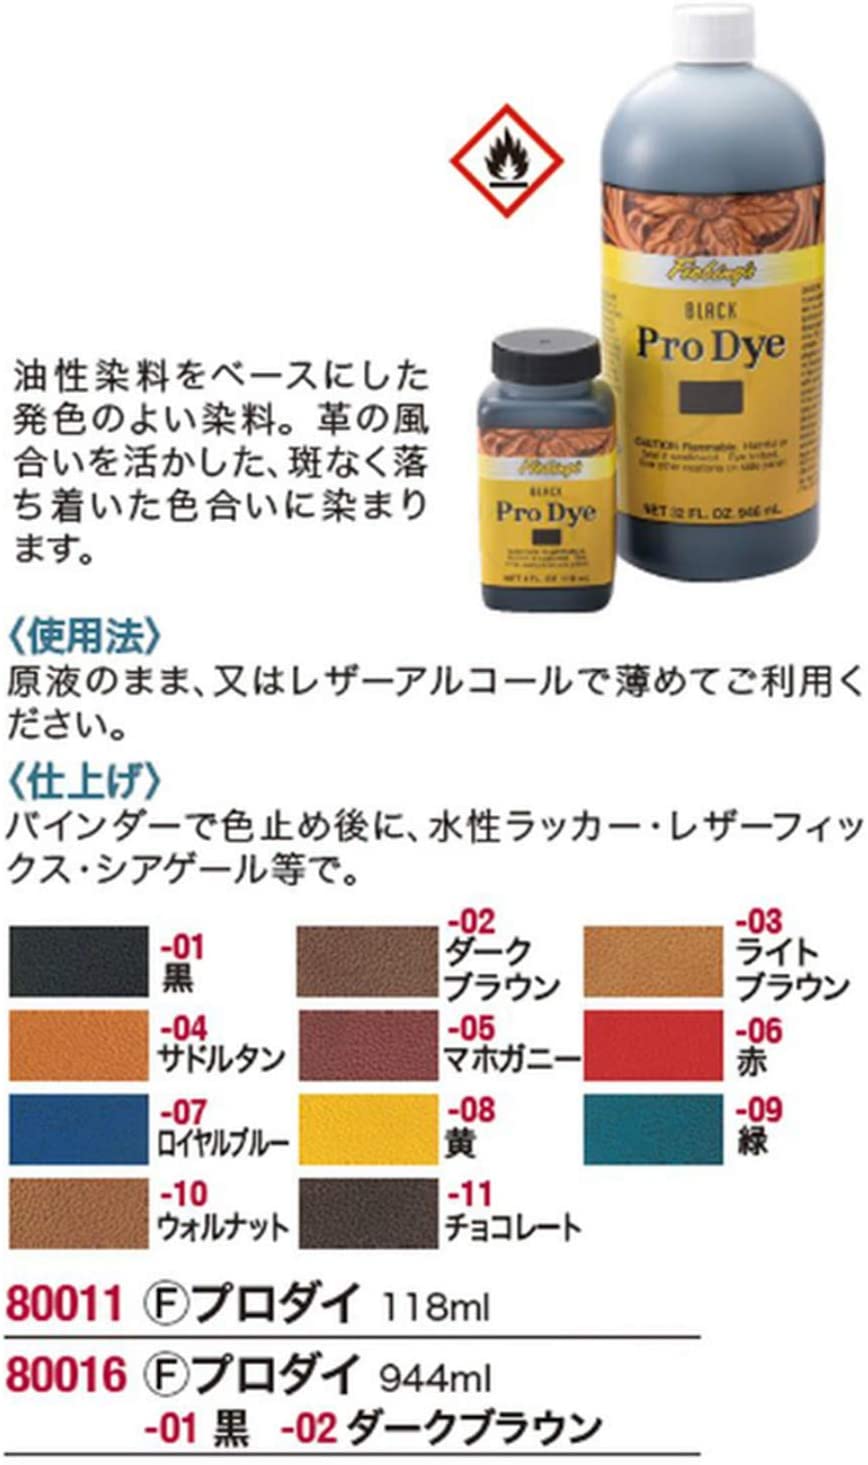 Fiebing's Pro Dye